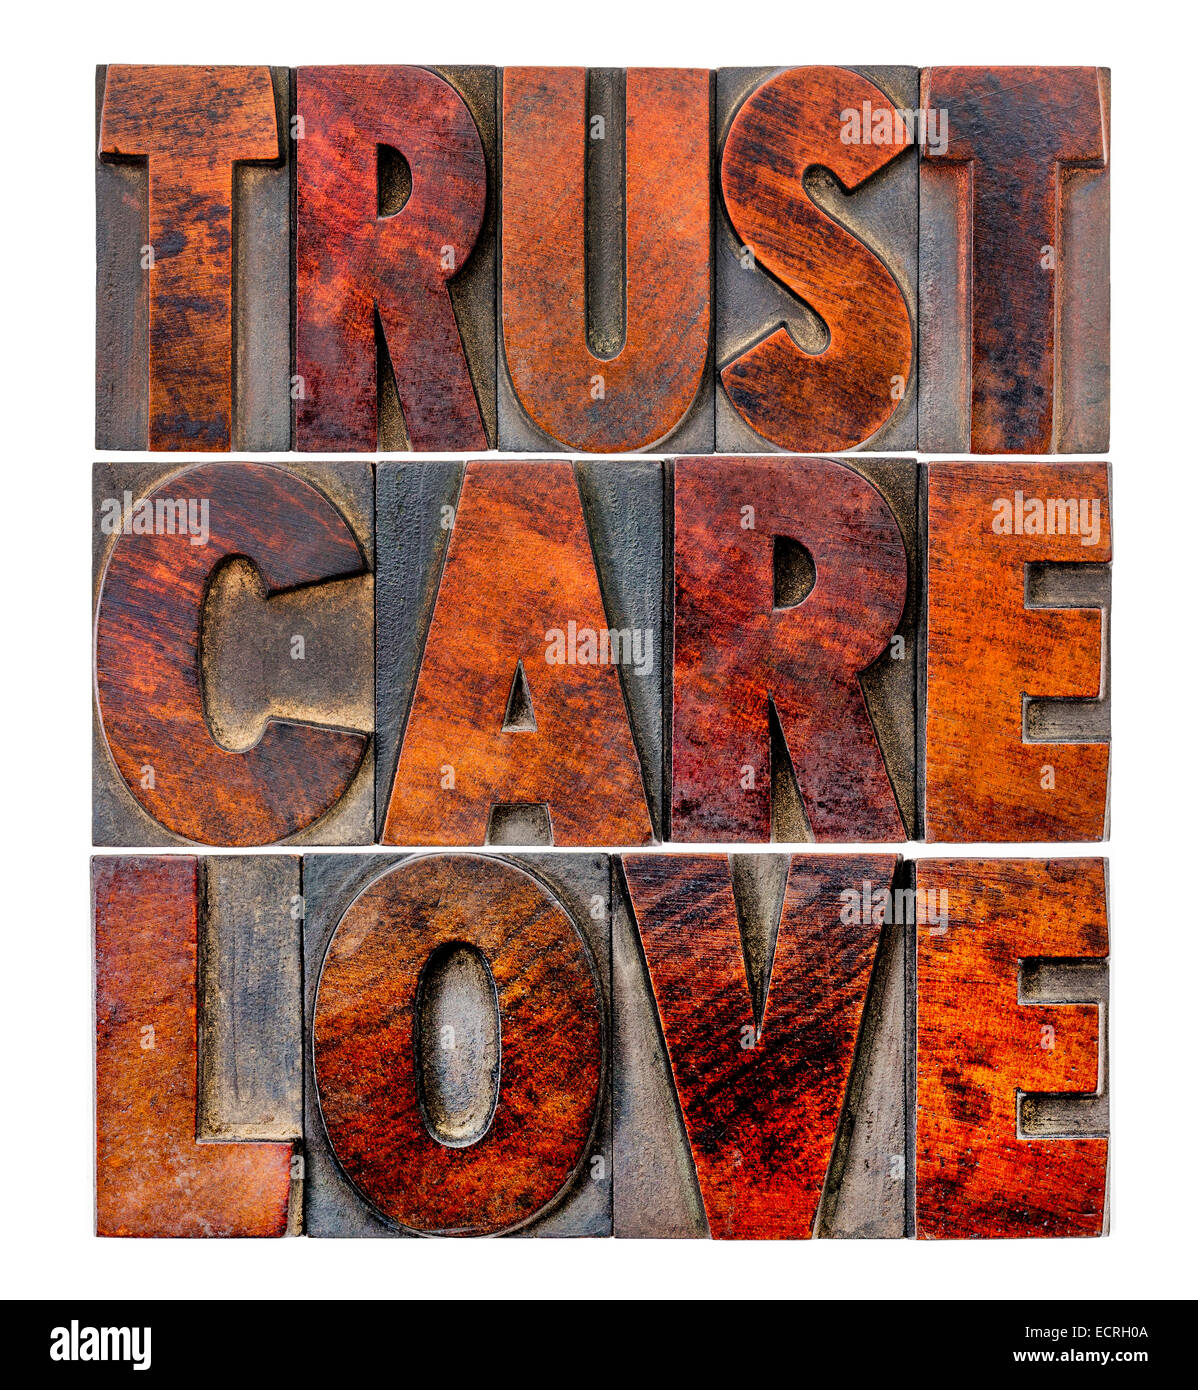 La fiducia, cura, amore - una parola isolata abstract in rilievografia vintage tipo legno Foto Stock